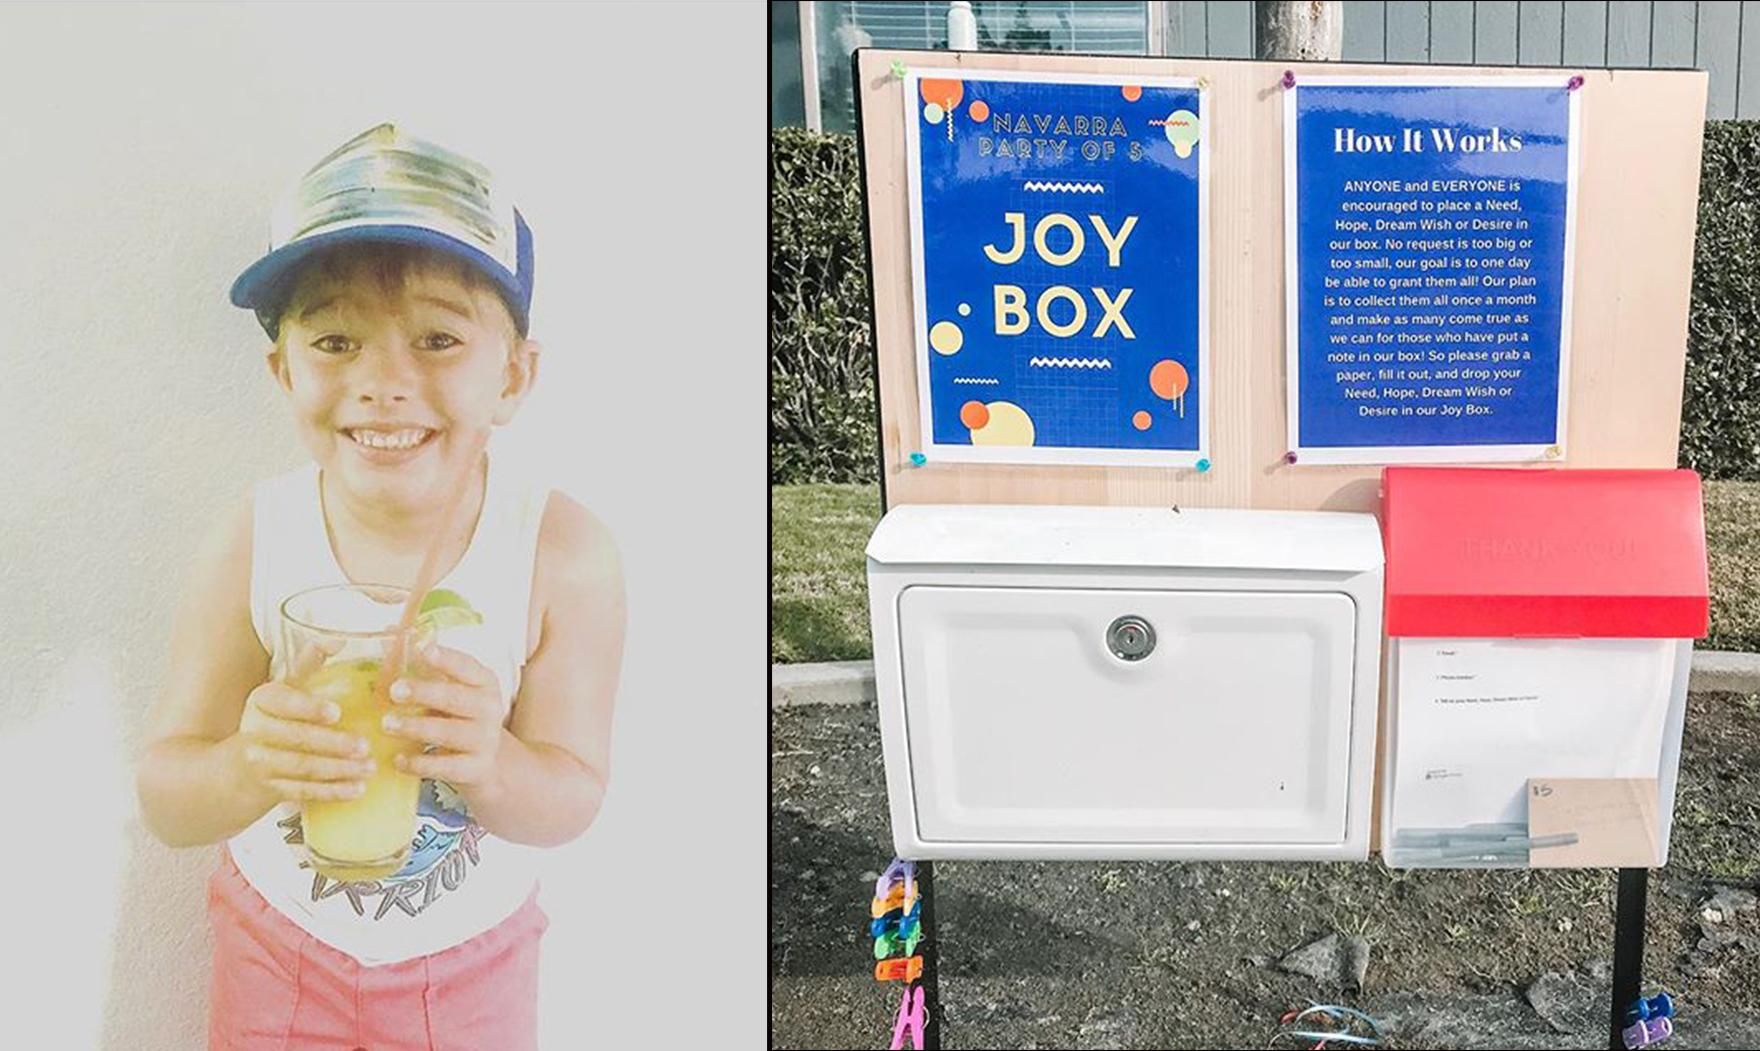 6-річний хлопчик придумав "коробку мрій", щоб зробити людей щасливішими